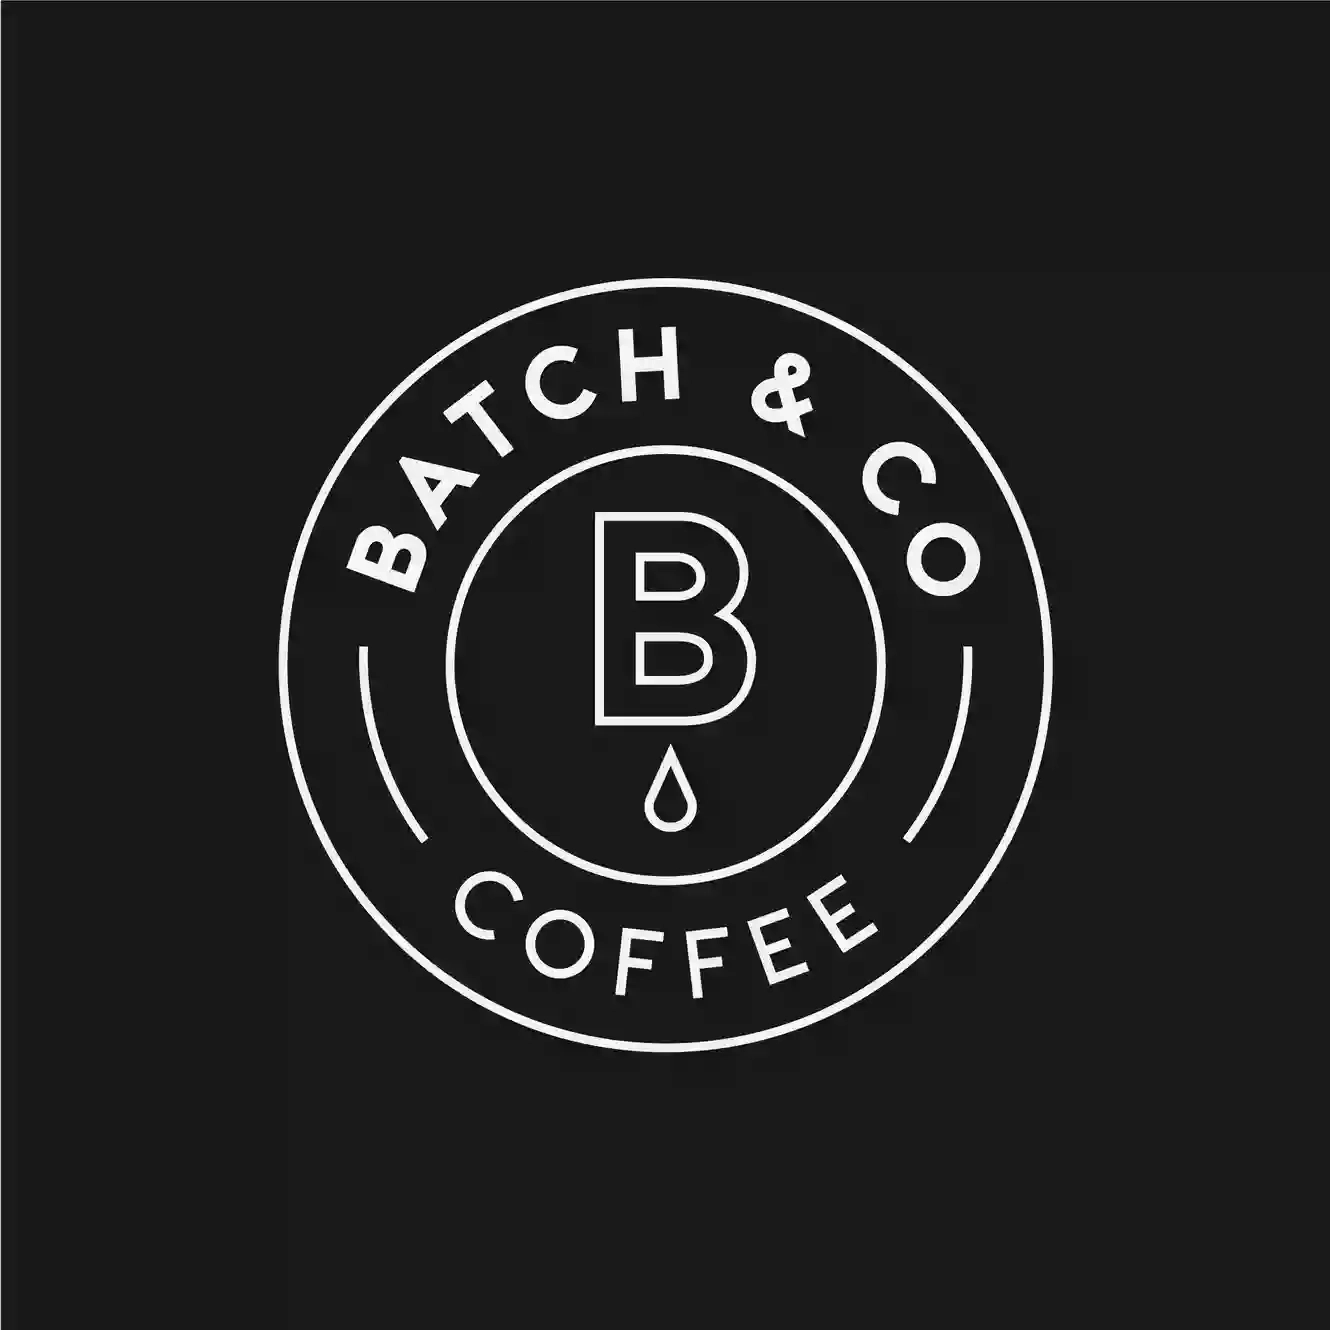 Batch & Co Coffee SW2 (Streatham Hill)